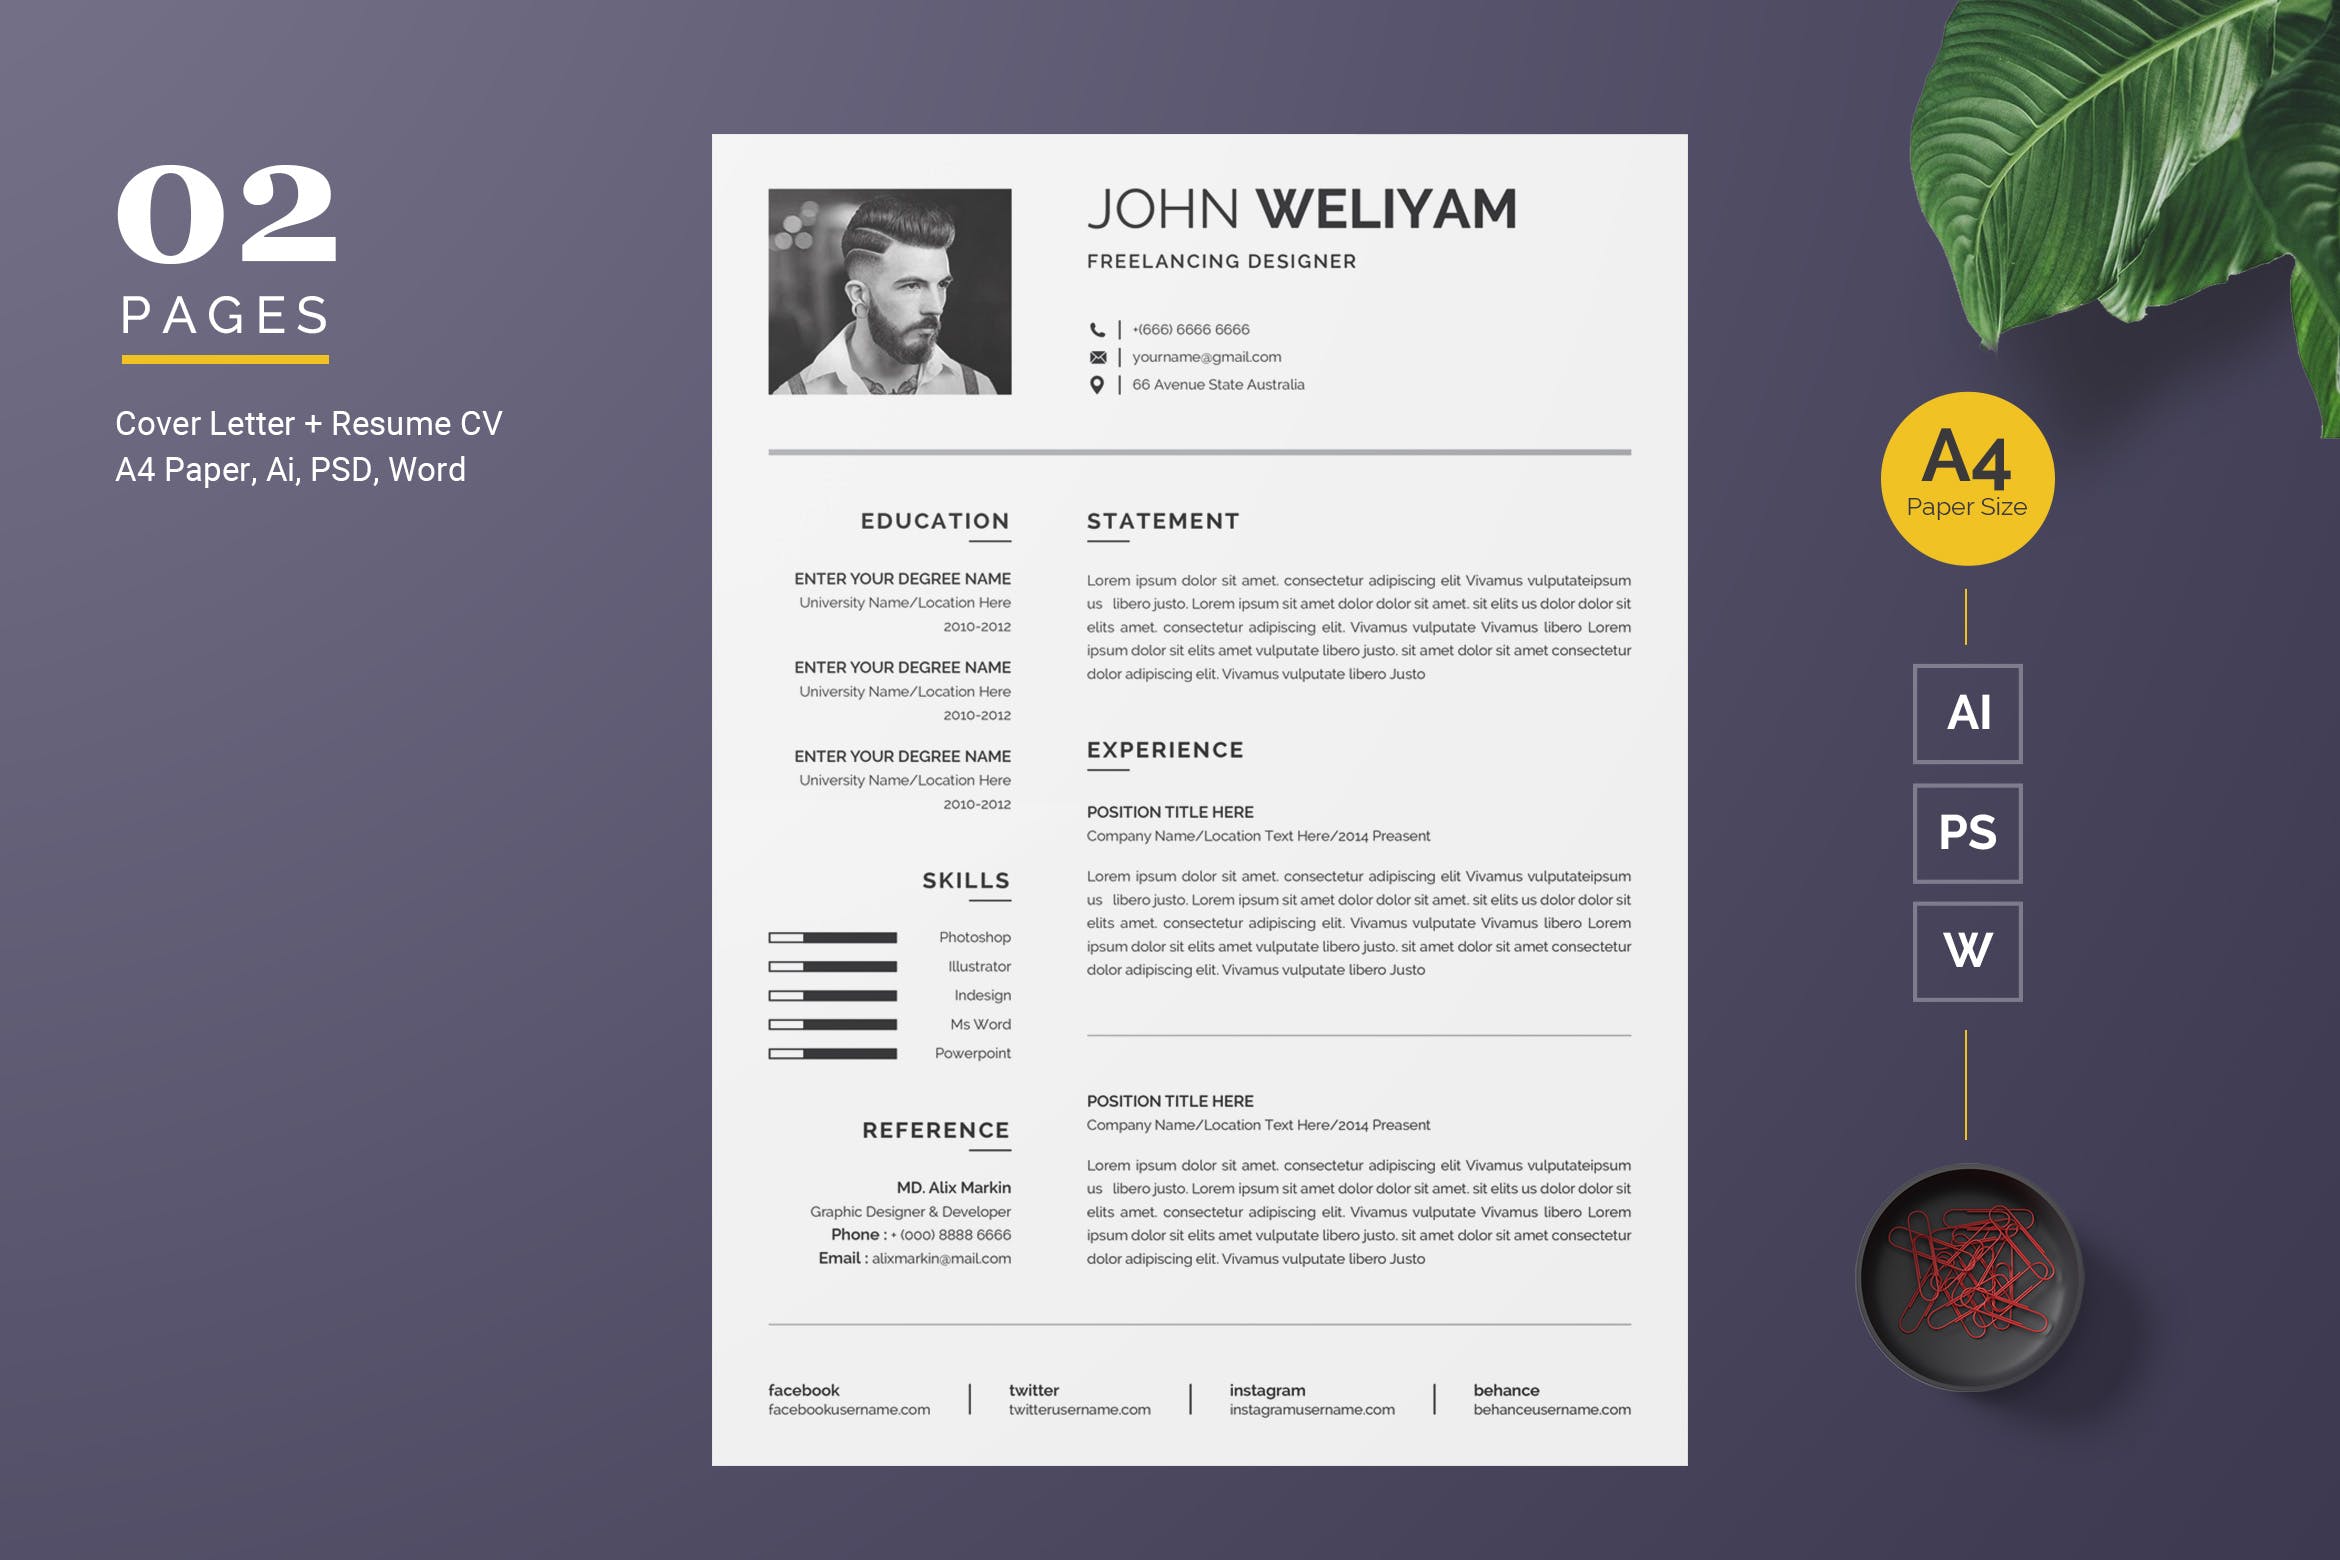 自由设计师现代风格简历排版模板 Modern Resume / CV Template插图